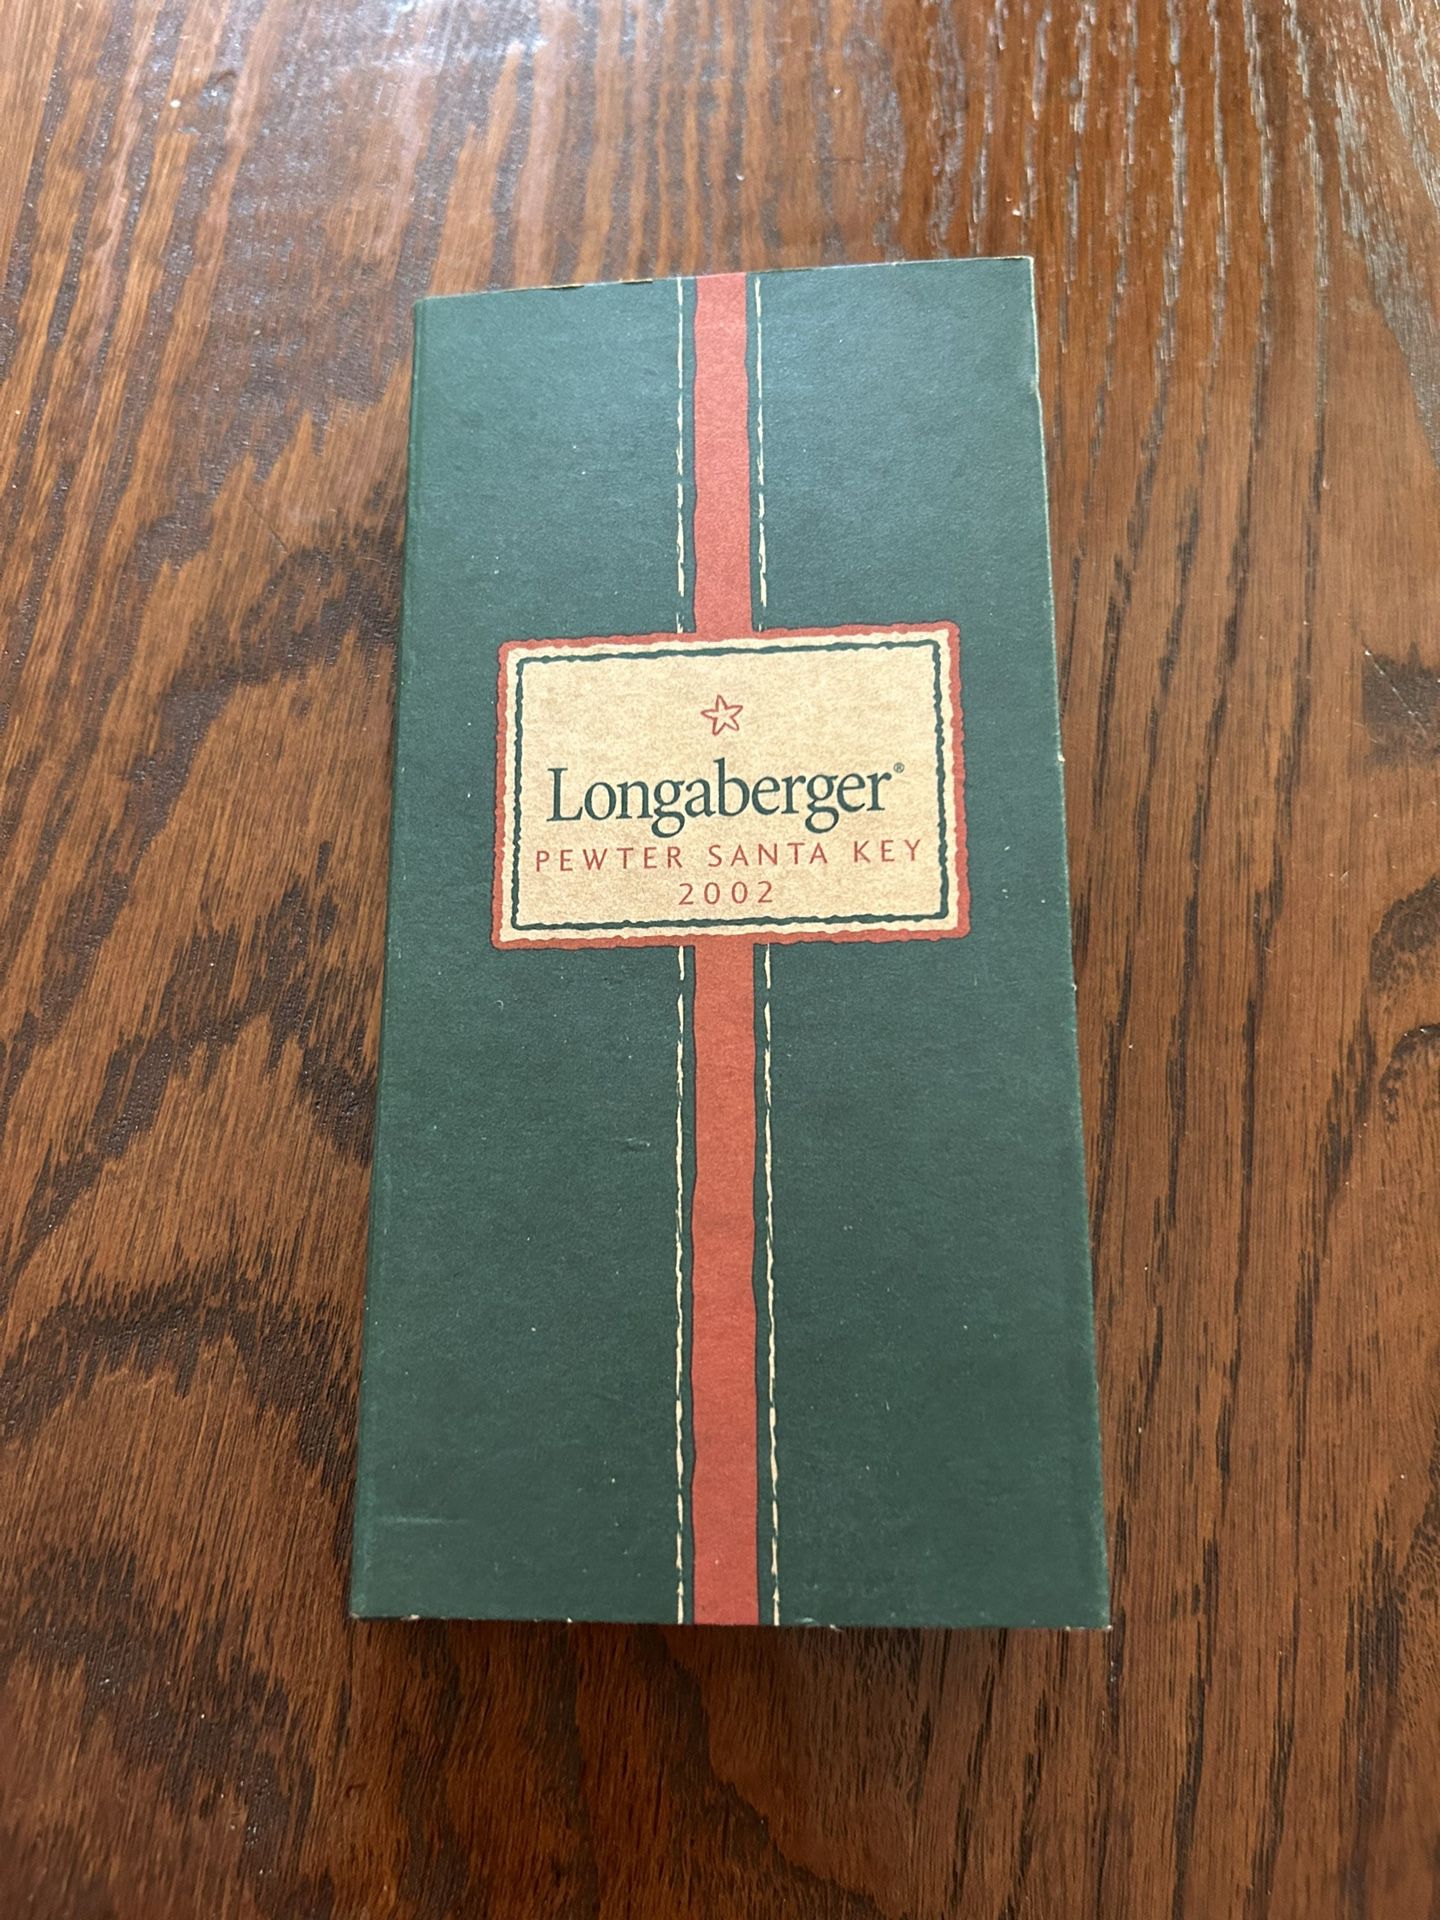 Longaberger Pewter Santa Key 2002 